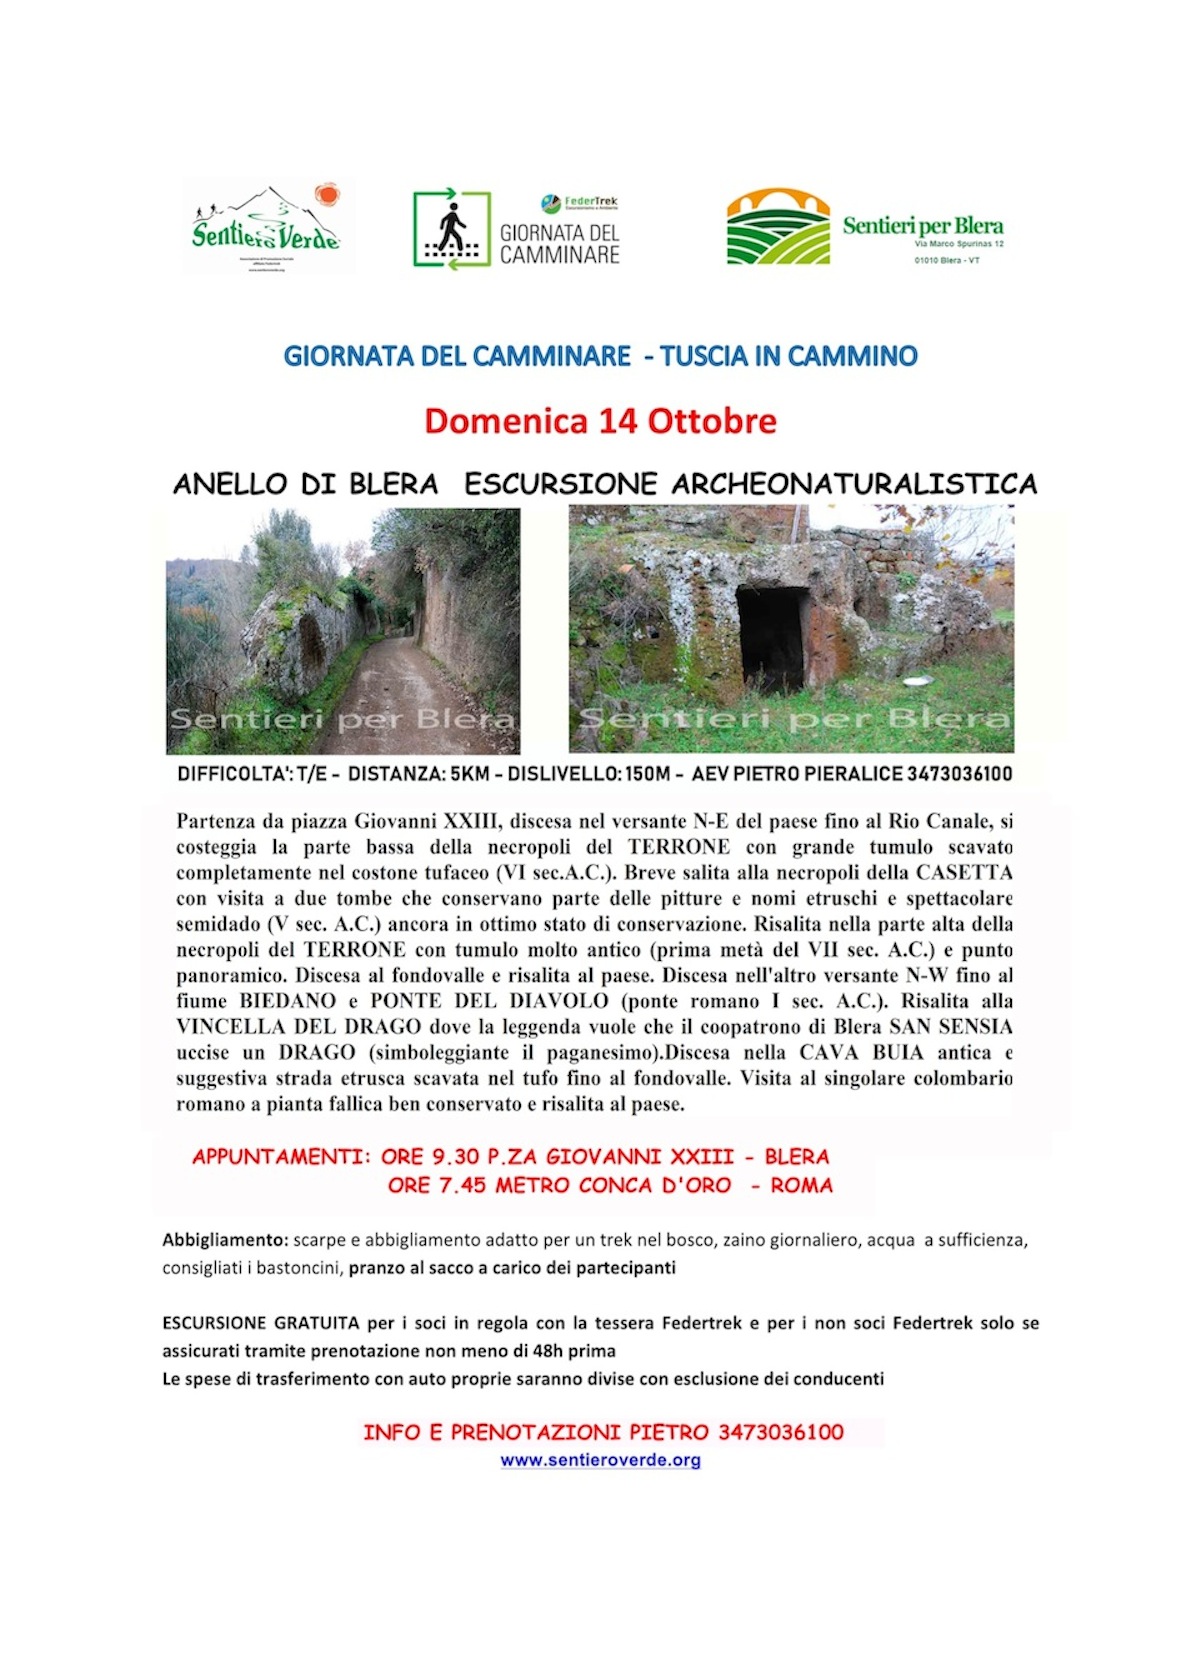 ANELLO DI BLERA escursione naturalistica/archeologica